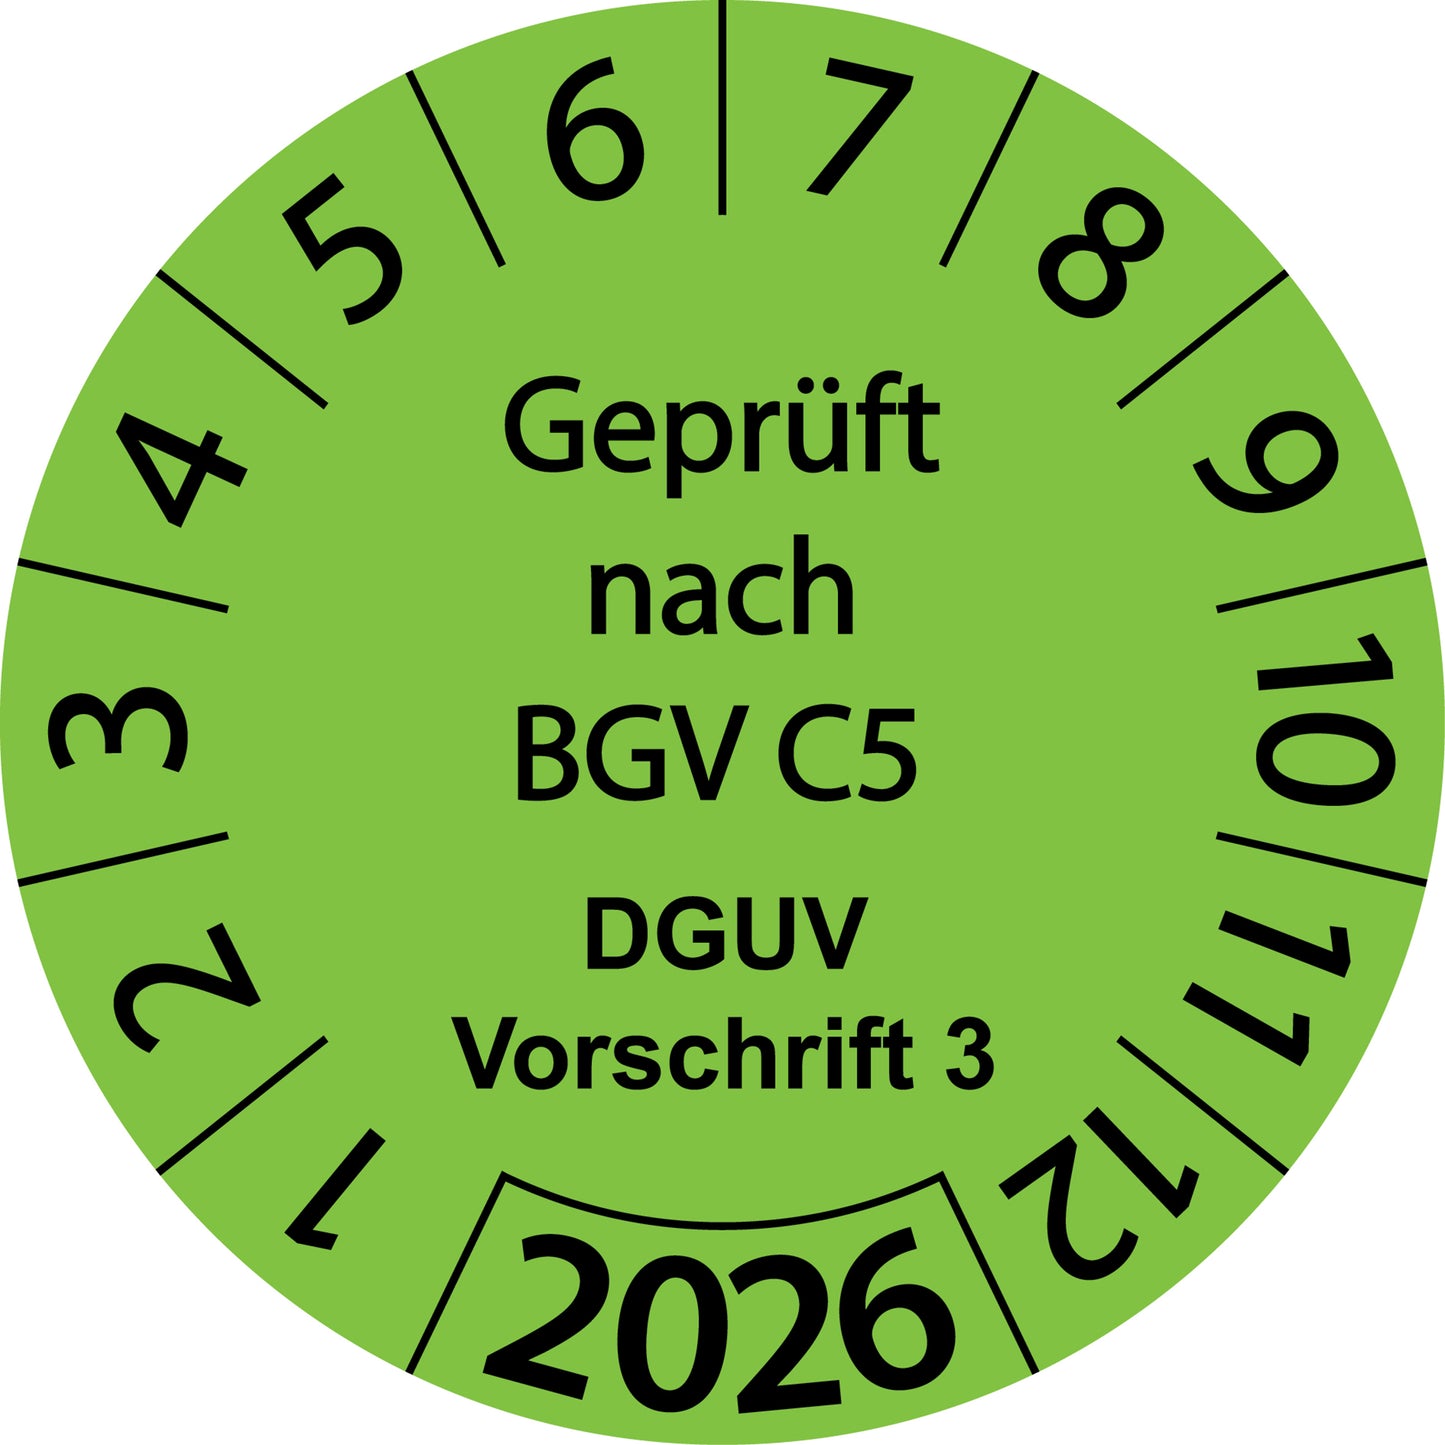 Einjahresprüfetiketten, Geprüft nach BGV C5, DGUV Vorschrift 3, Startjahr: 2026 aus Papier oder Plastik